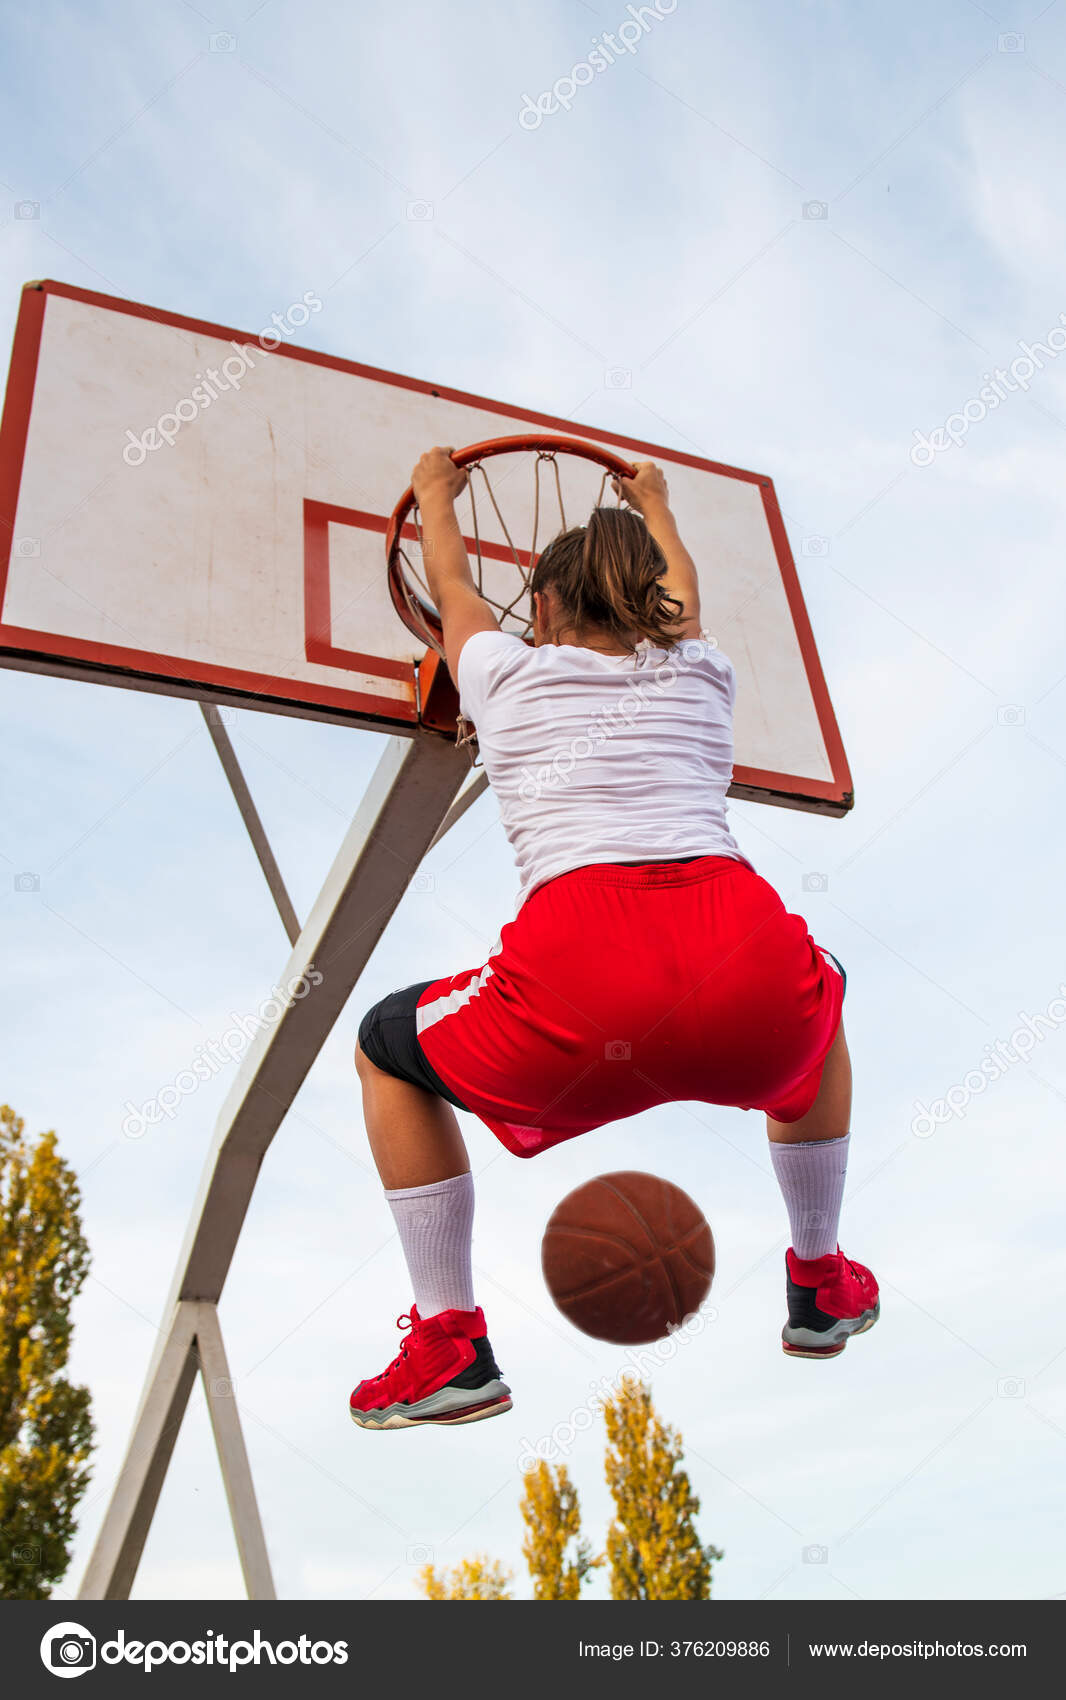 Basketballspielen